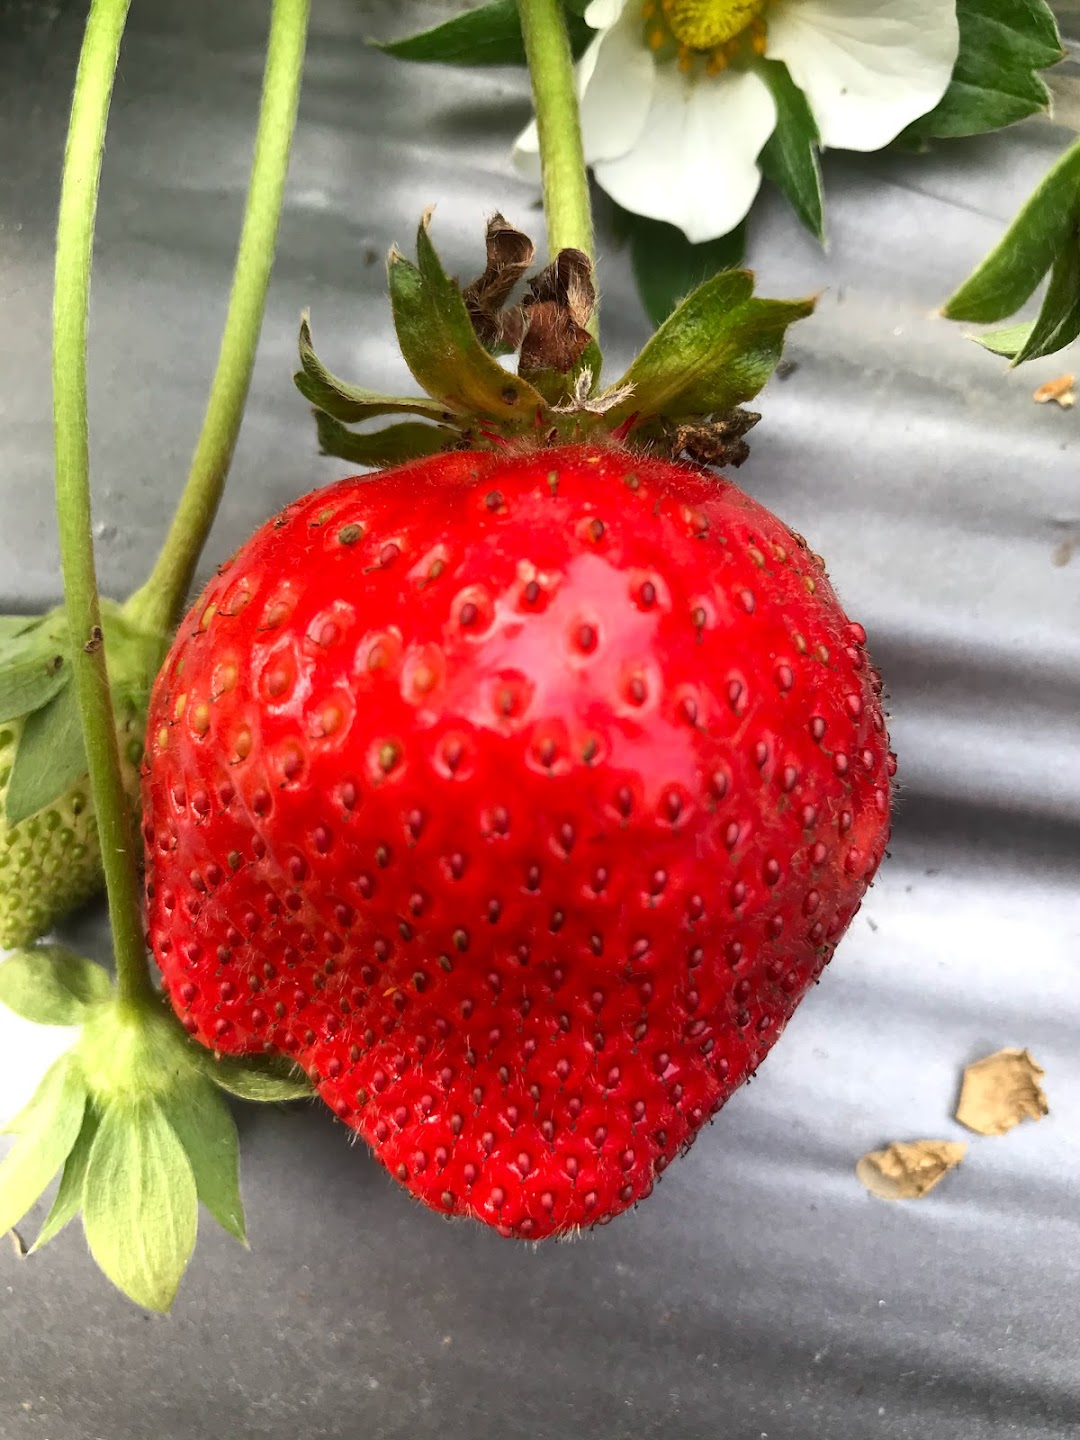 田尾草莓园